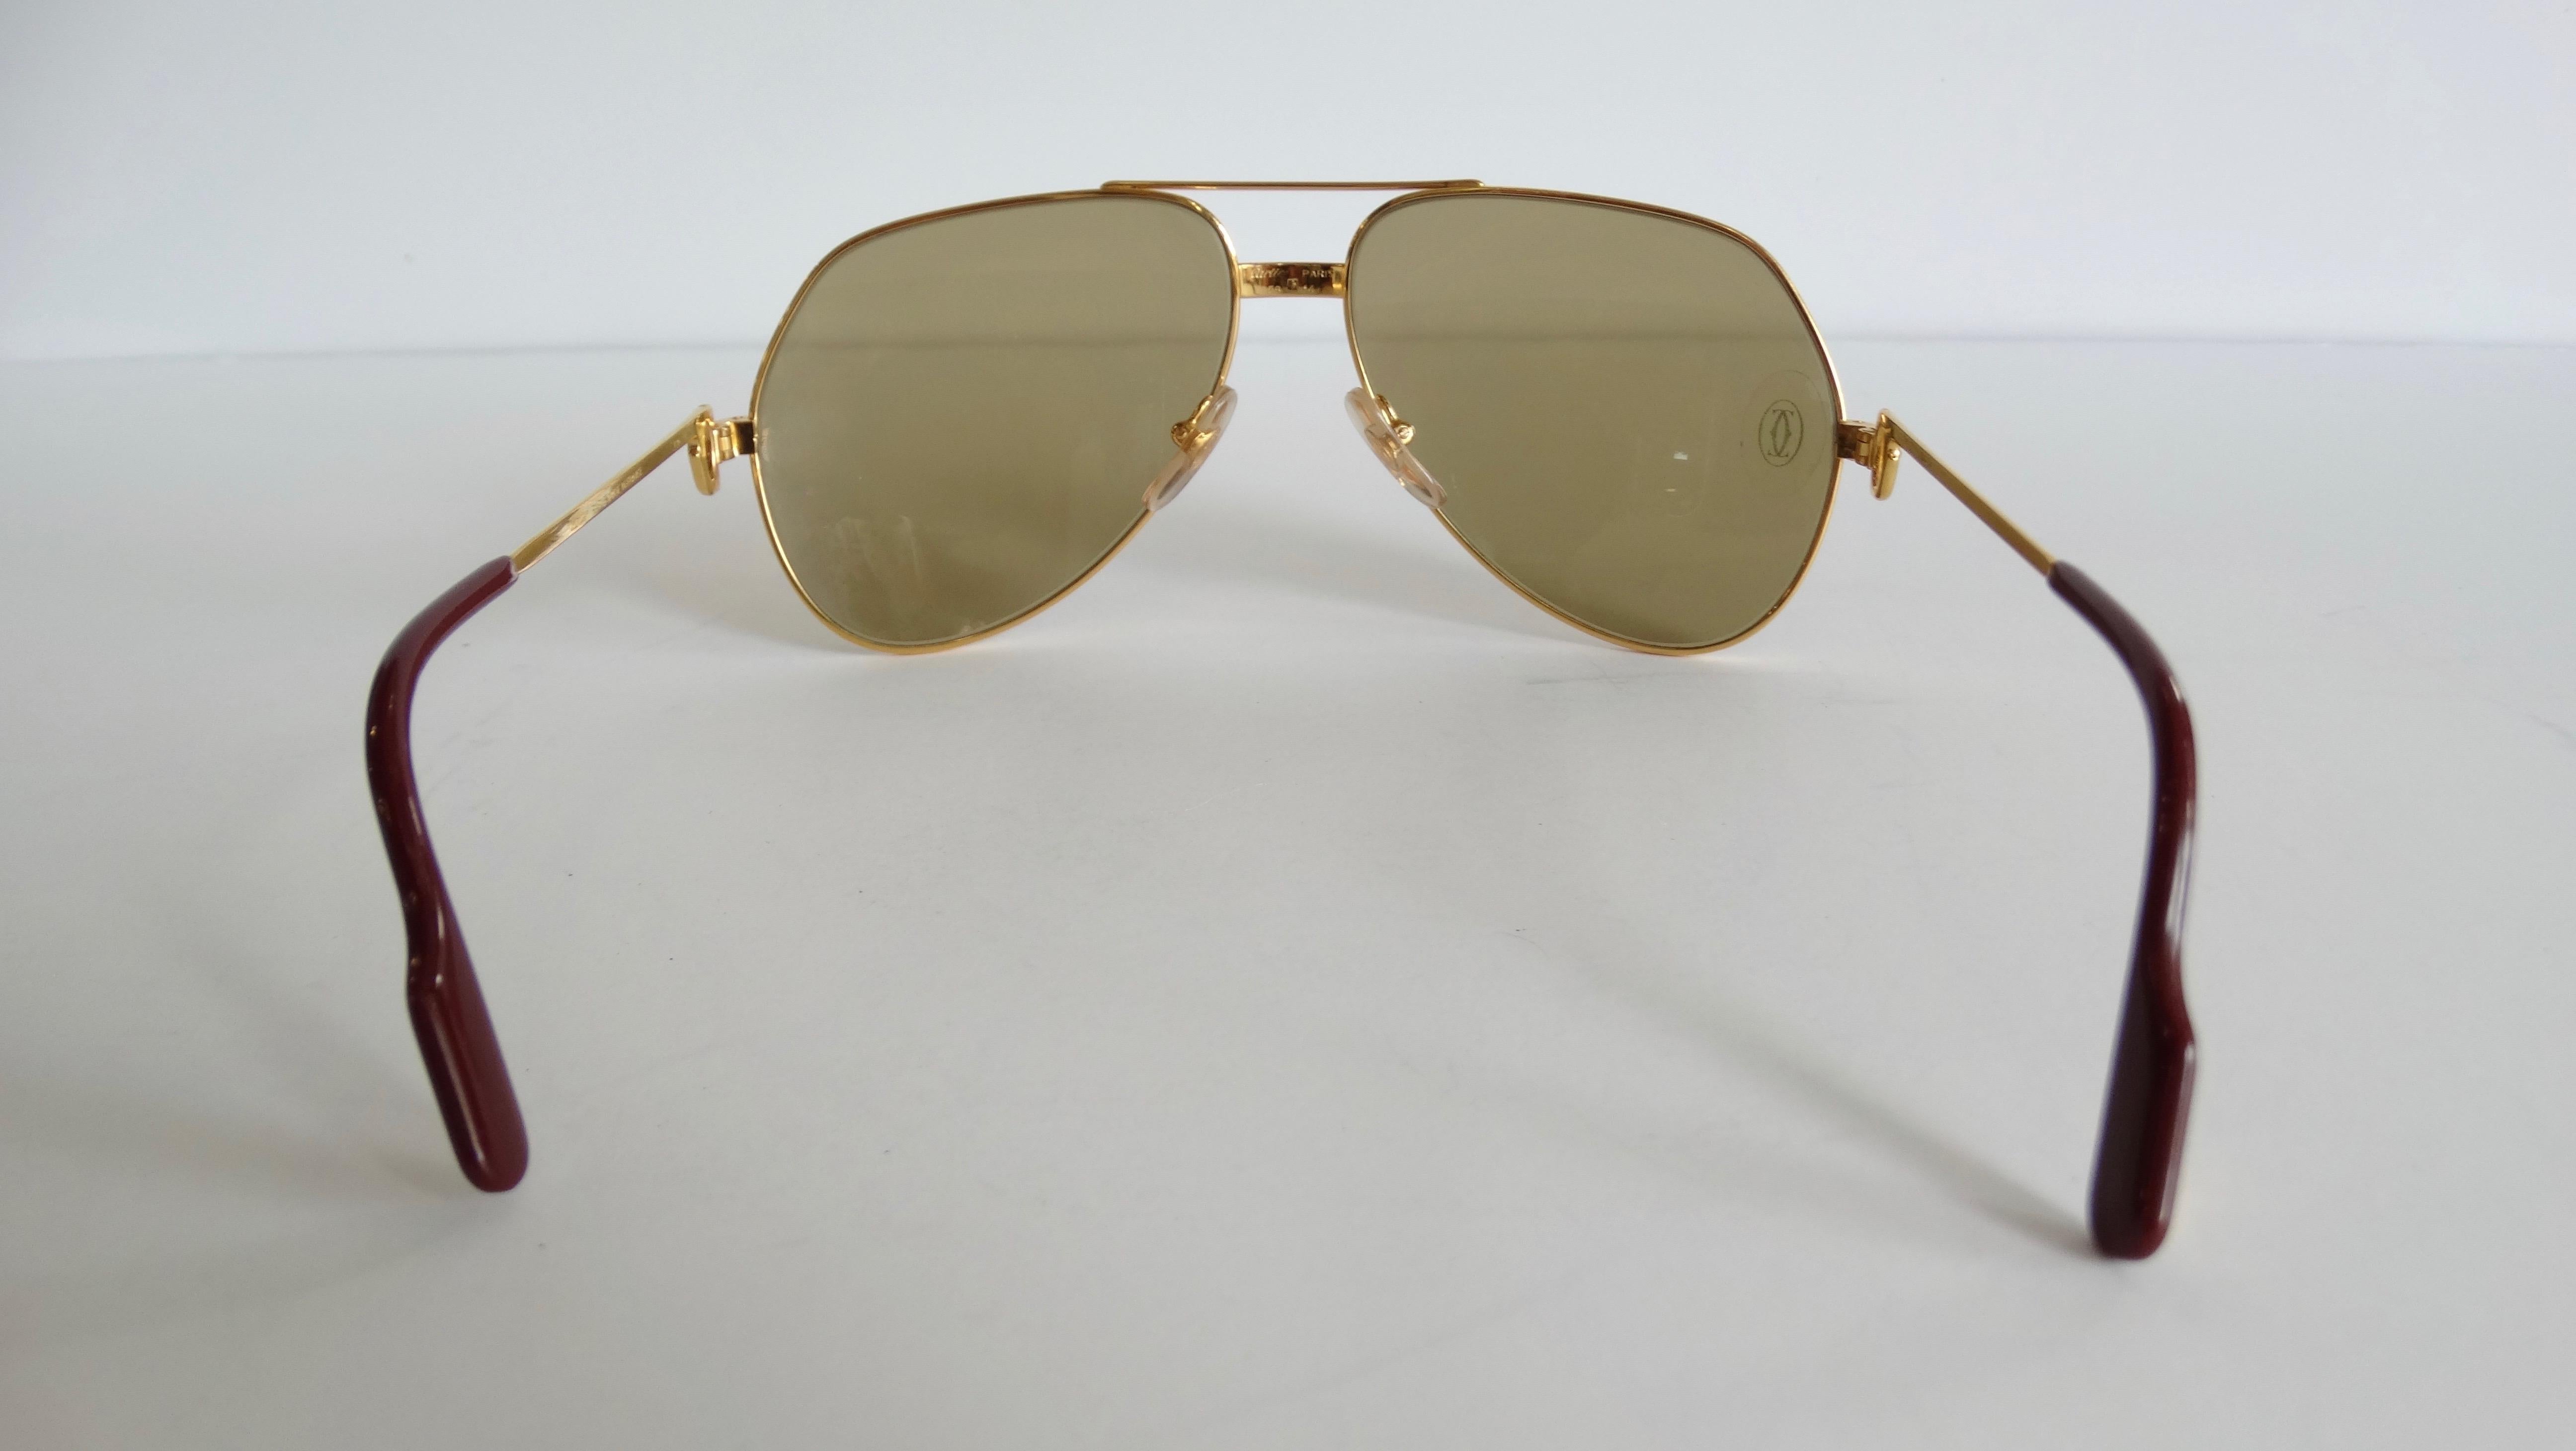 Offrez-vous l'ultime paire de lunettes de soleil vintage ! Datant de 1983-1997, ces lunettes de soleil aviateur Cartier, connues sous le nom de Vendôme Louis, sont plaquées argent/or et comportent des verres teintés bruns avec le logo Cartier gravé.